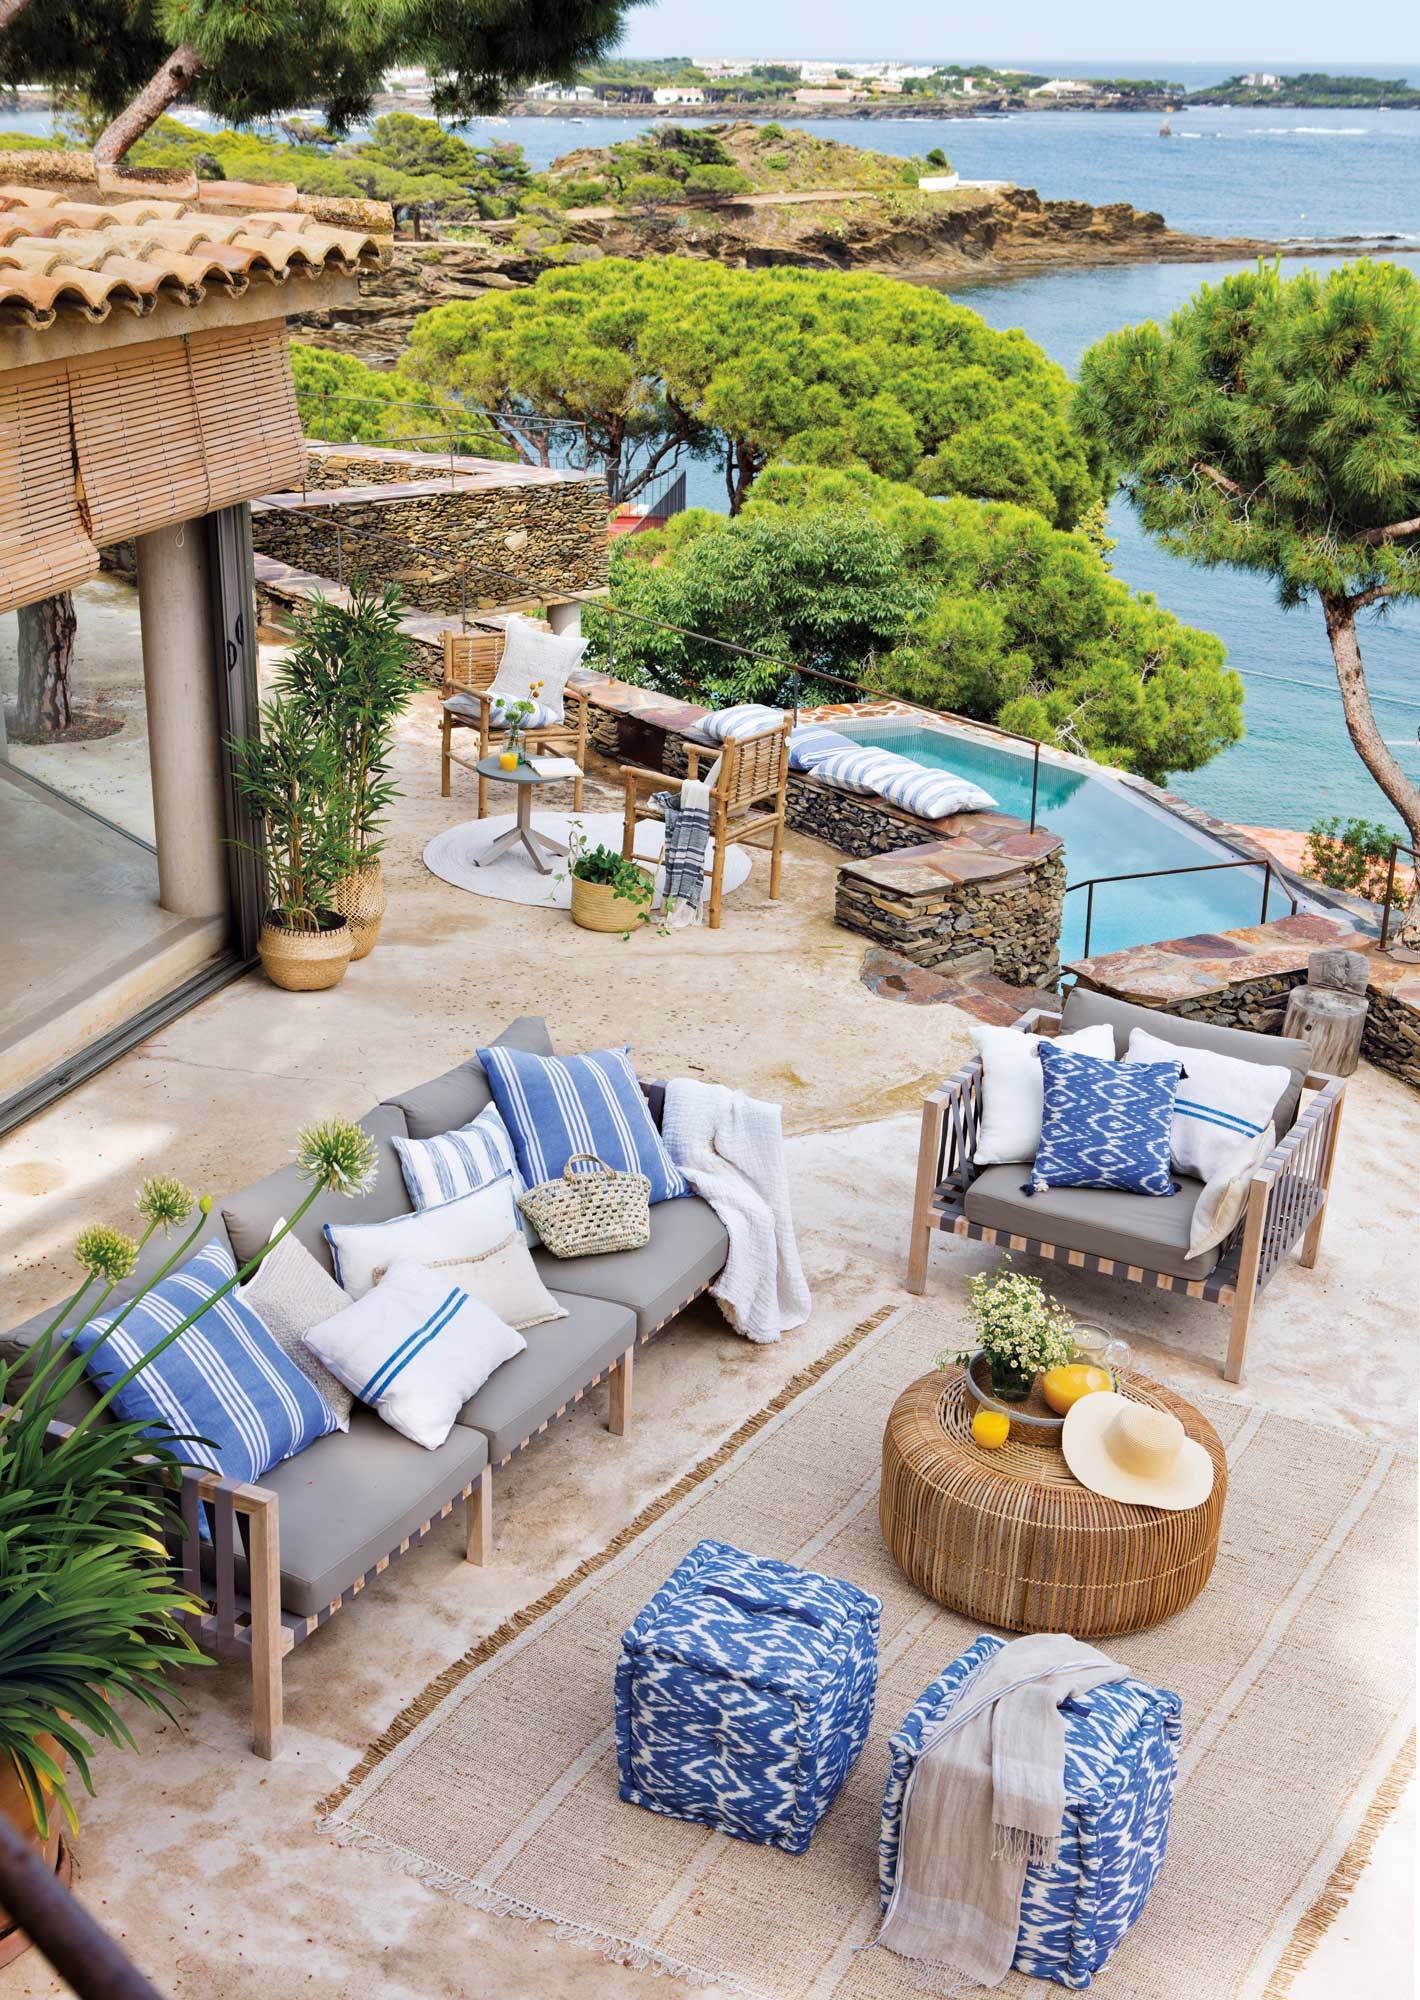 Cómo decorar una terraza de estilo mediterráneo. 